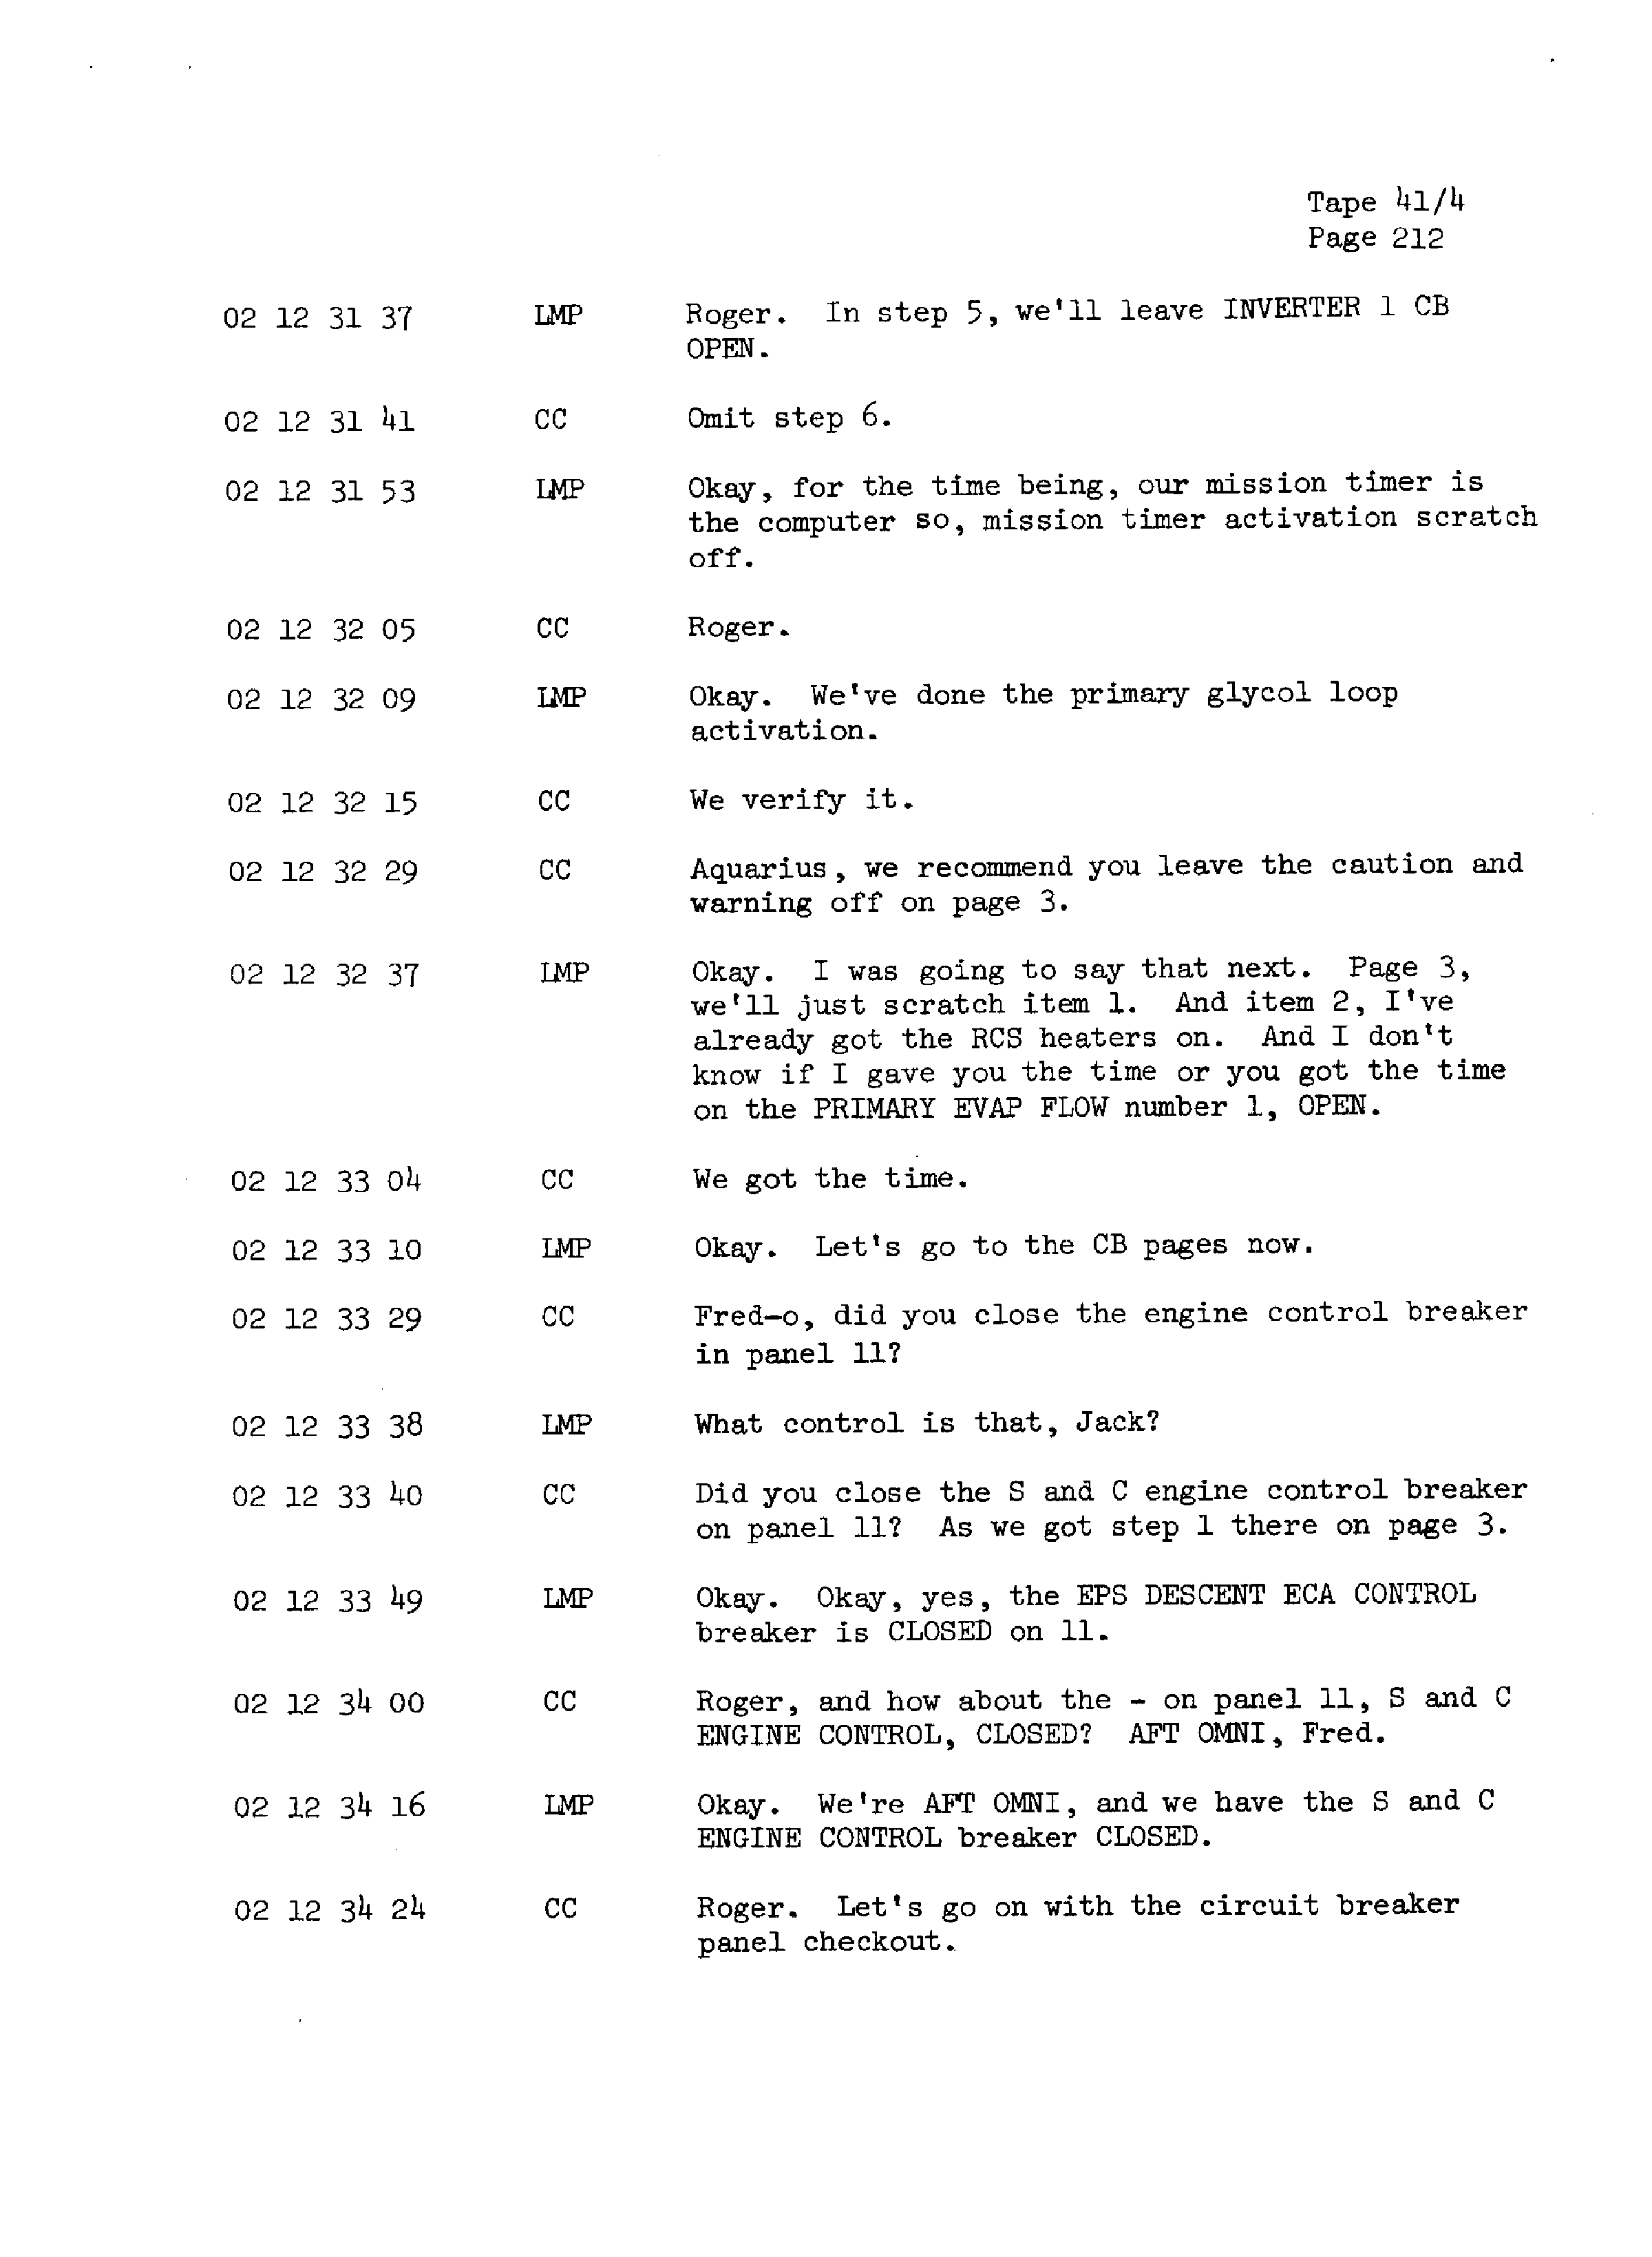 Page 219 of Apollo 13’s original transcript